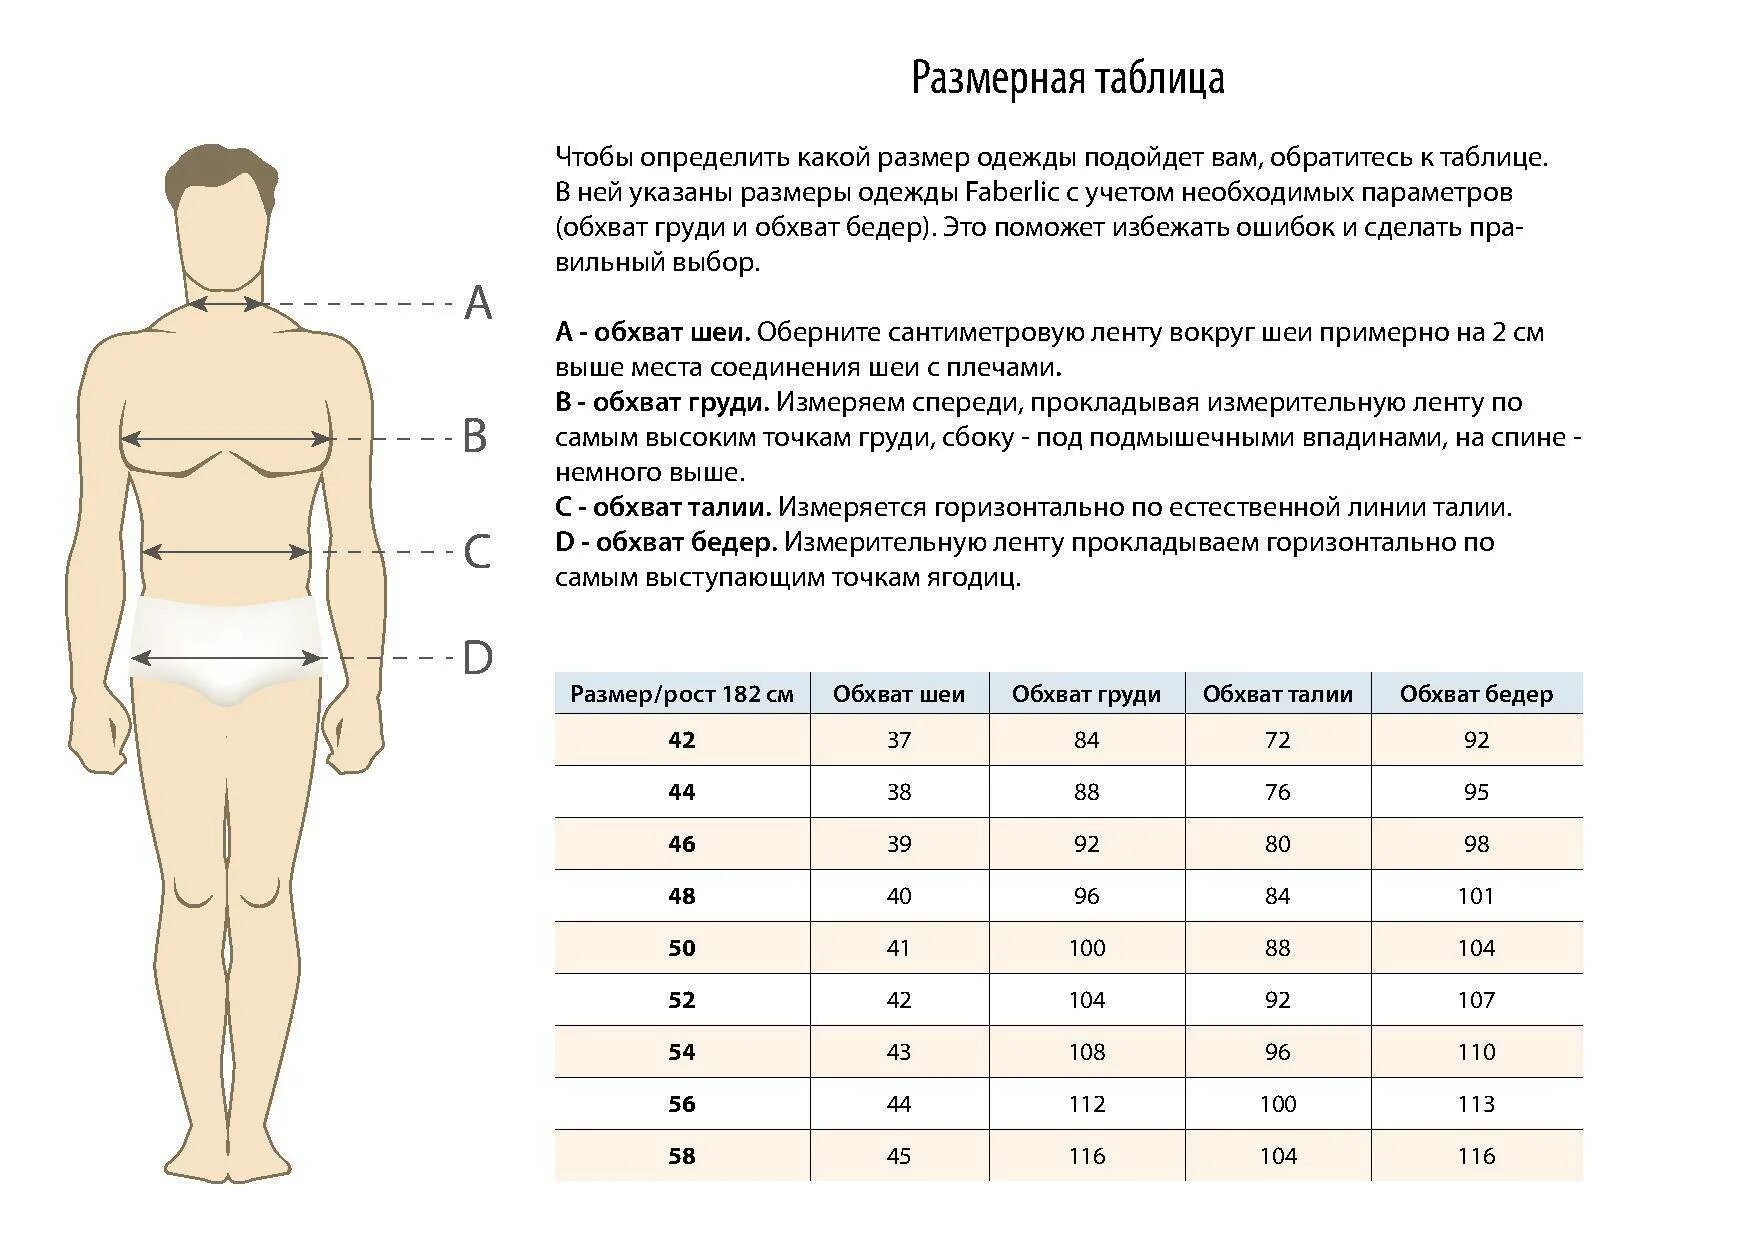 Размер полученный измерением. Как определить размер одежды для мужчин по меркам таблица российский. Как понять таблицу размеров одежды. Как определить мужской размер одежды. Таблица размеров одежды для мужчин обхват талии.